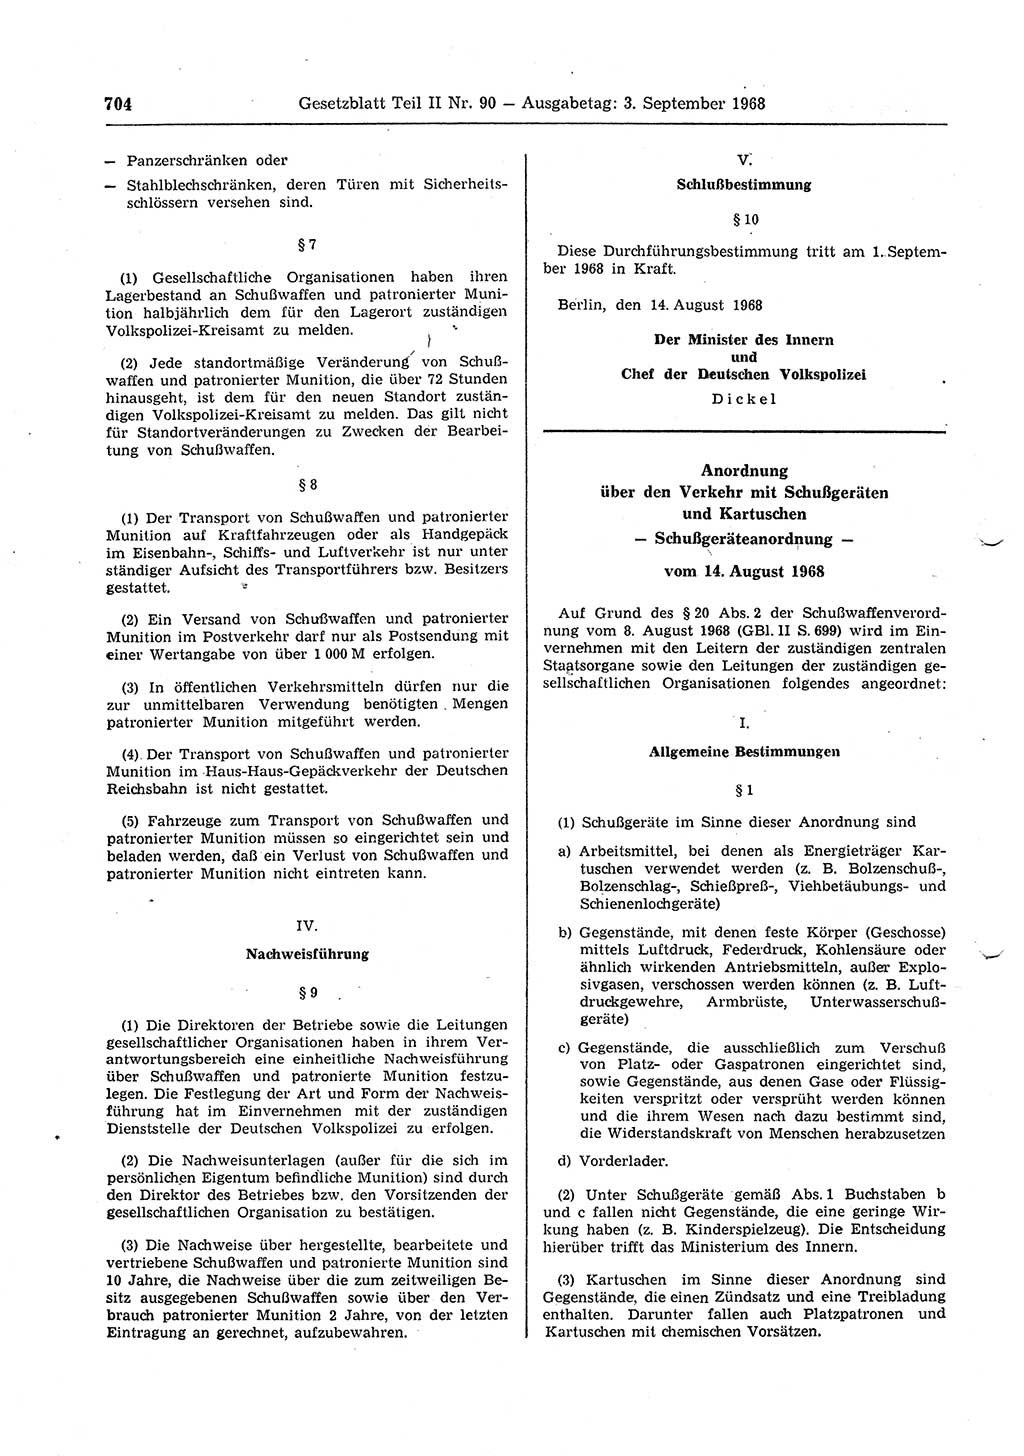 Gesetzblatt (GBl.) der Deutschen Demokratischen Republik (DDR) Teil ⅠⅠ 1968, Seite 704 (GBl. DDR ⅠⅠ 1968, S. 704)